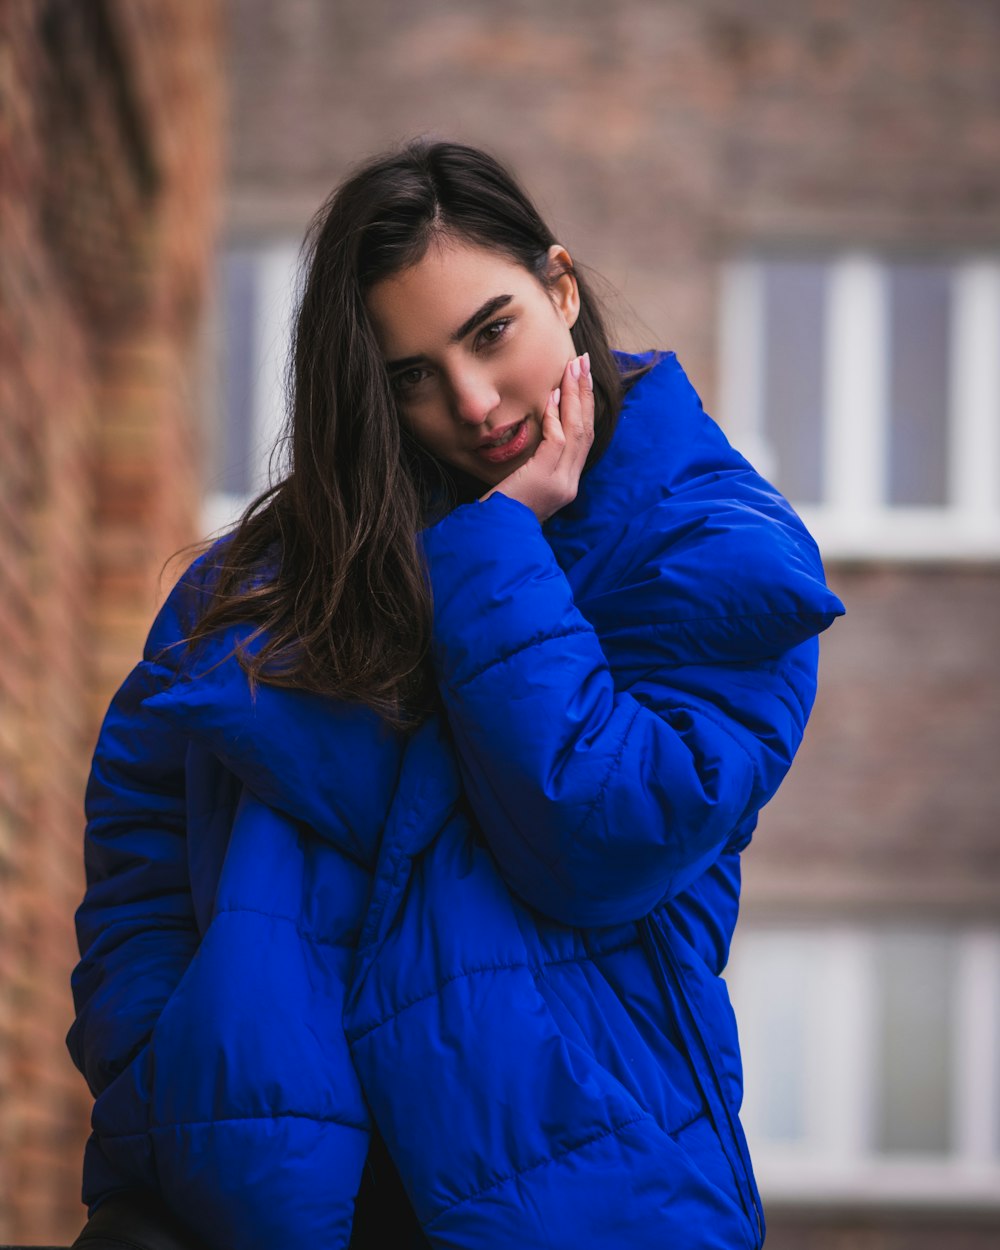 woman in blue jacket